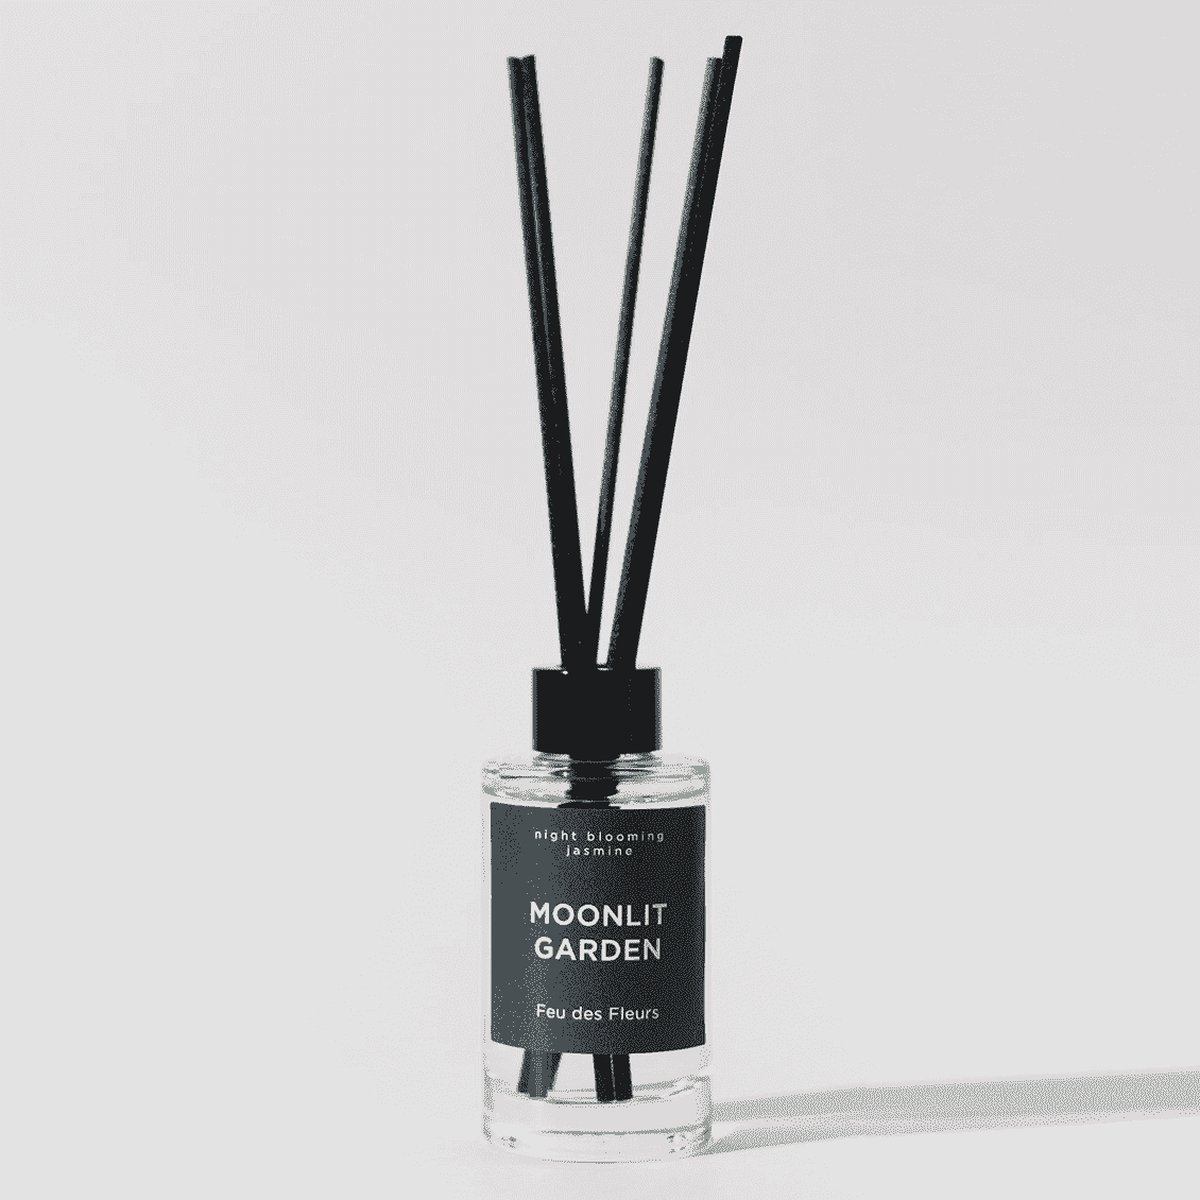 Geurstokjes ‘Moonlit Garden’ van Feu Des Fleurs - 100ml - Premium geurstokjes met hoogwaardige parfumoliën